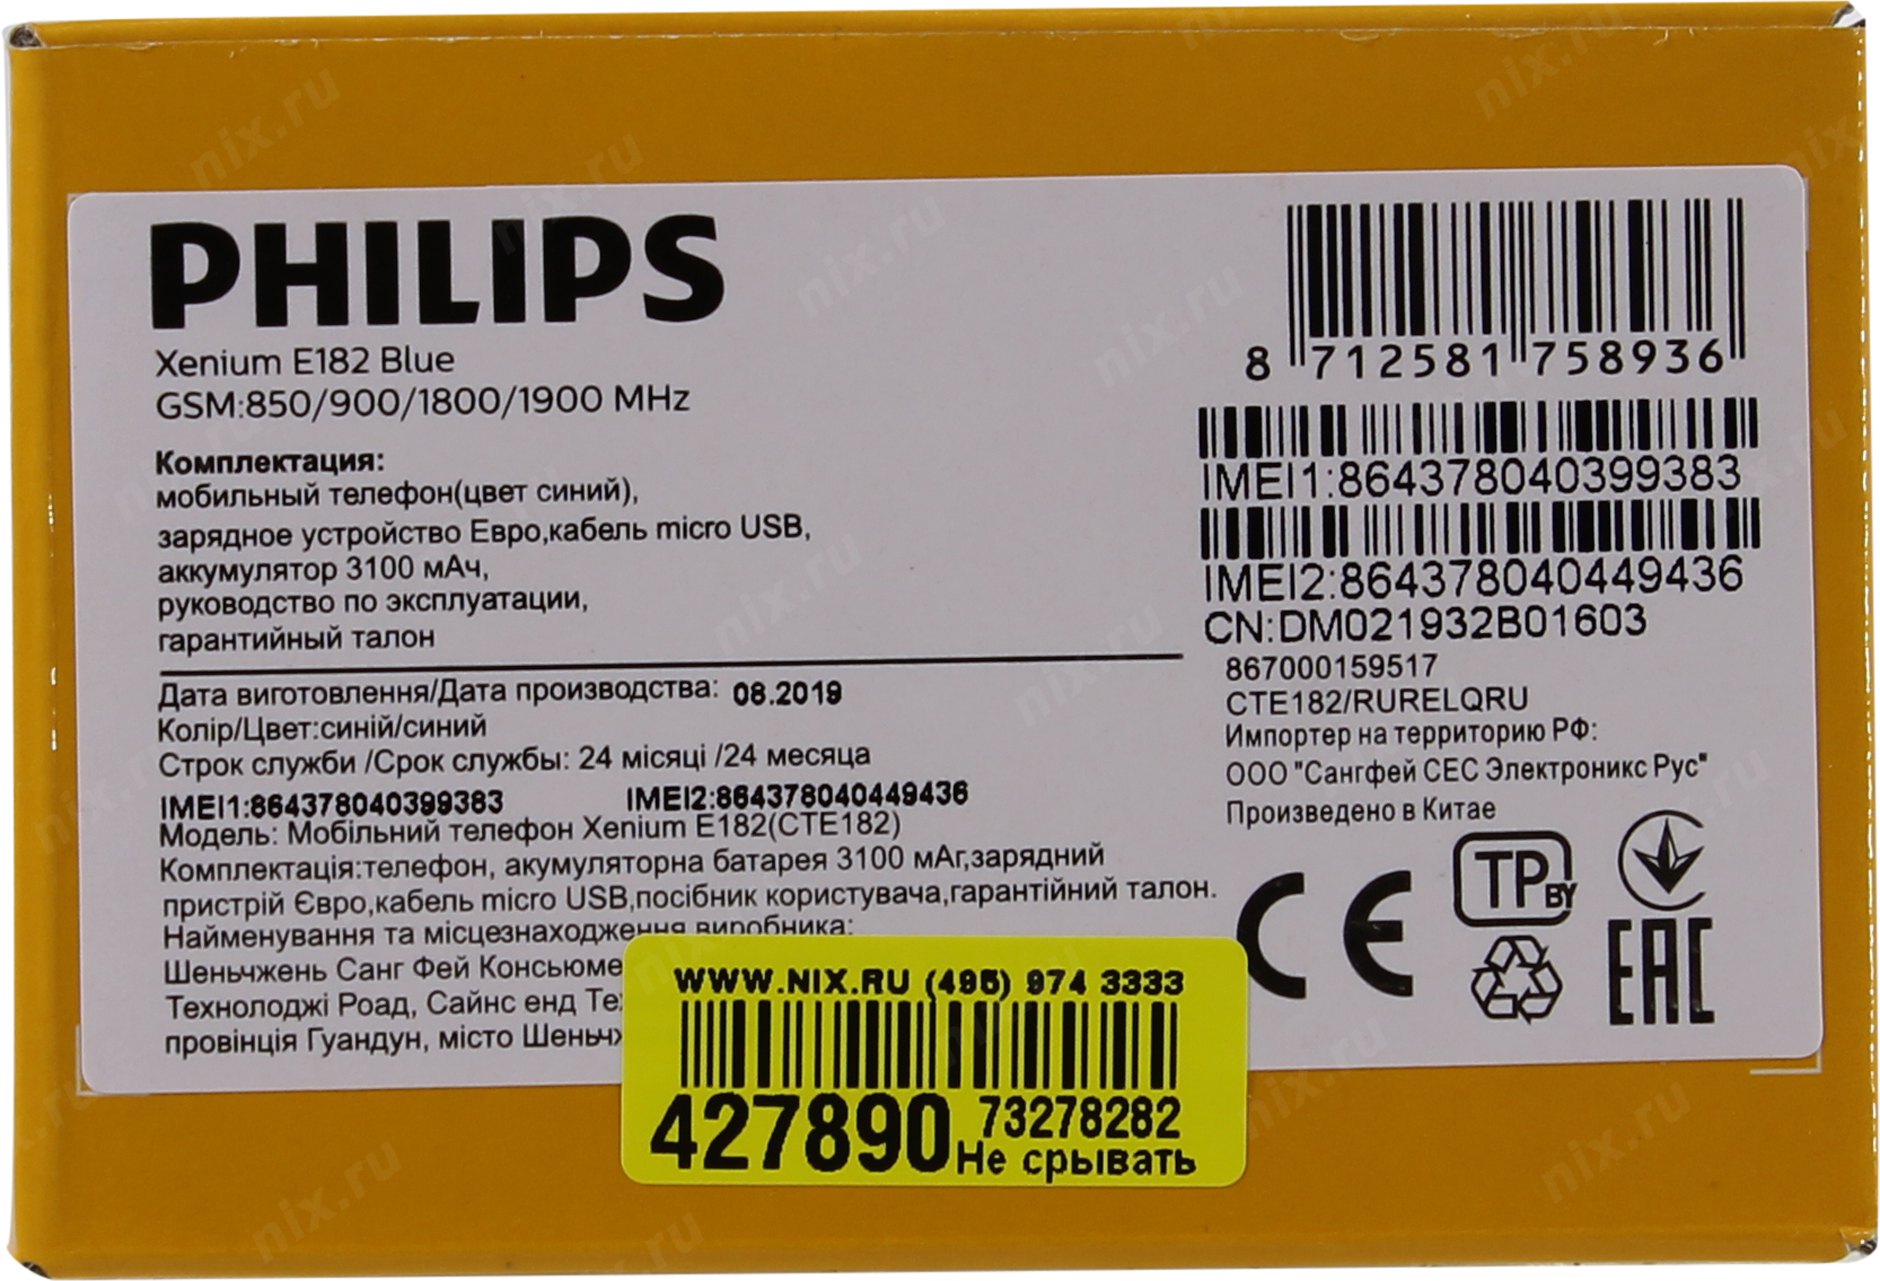 Описание филипс. Philips Xenium e182. Телефон Philips Xenium e182. Philips Xenium е182. Philips Xenium e182 Philips.